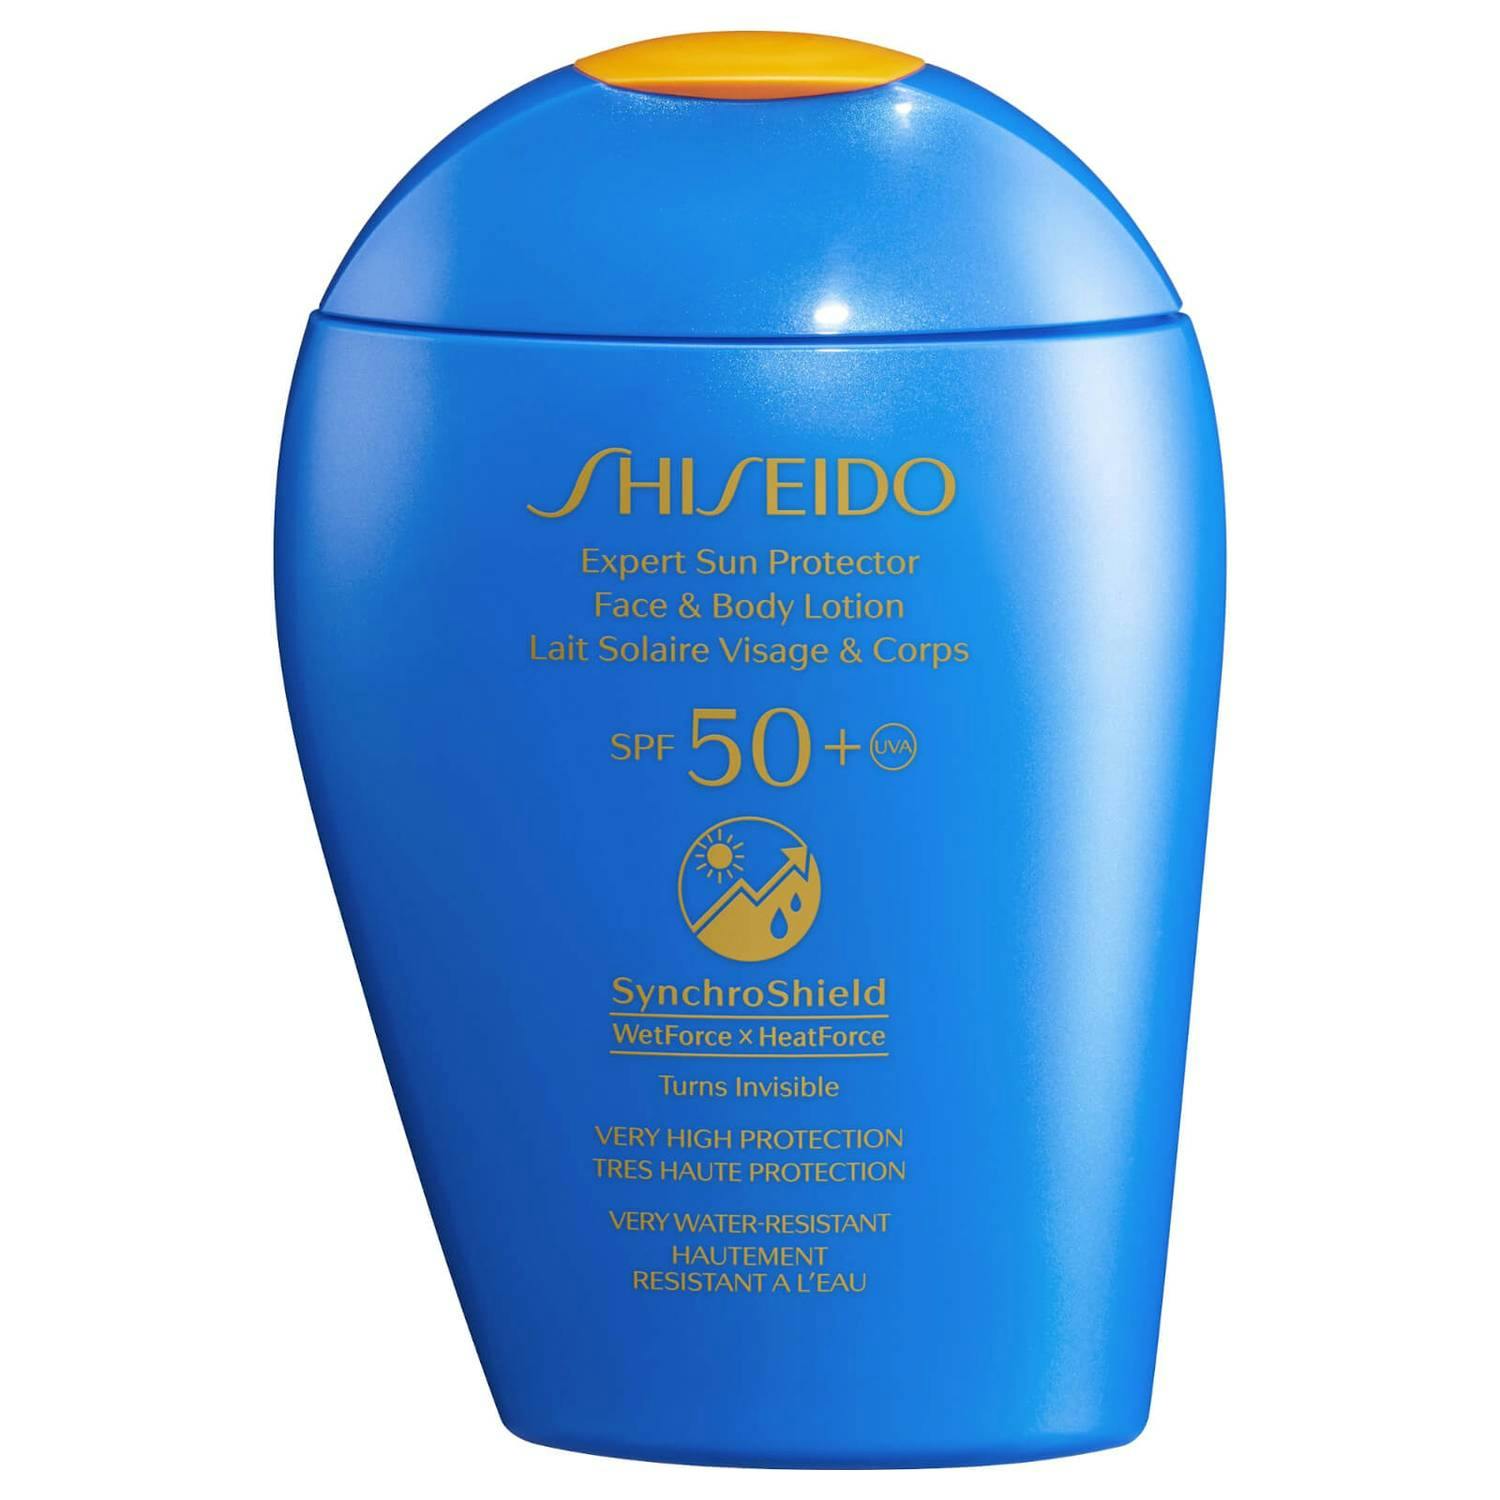 Shiseido Expert Sun Protector Face & Body Lotion SPF 50+ Сонцезахисний лосьйон для обличчя і тіла